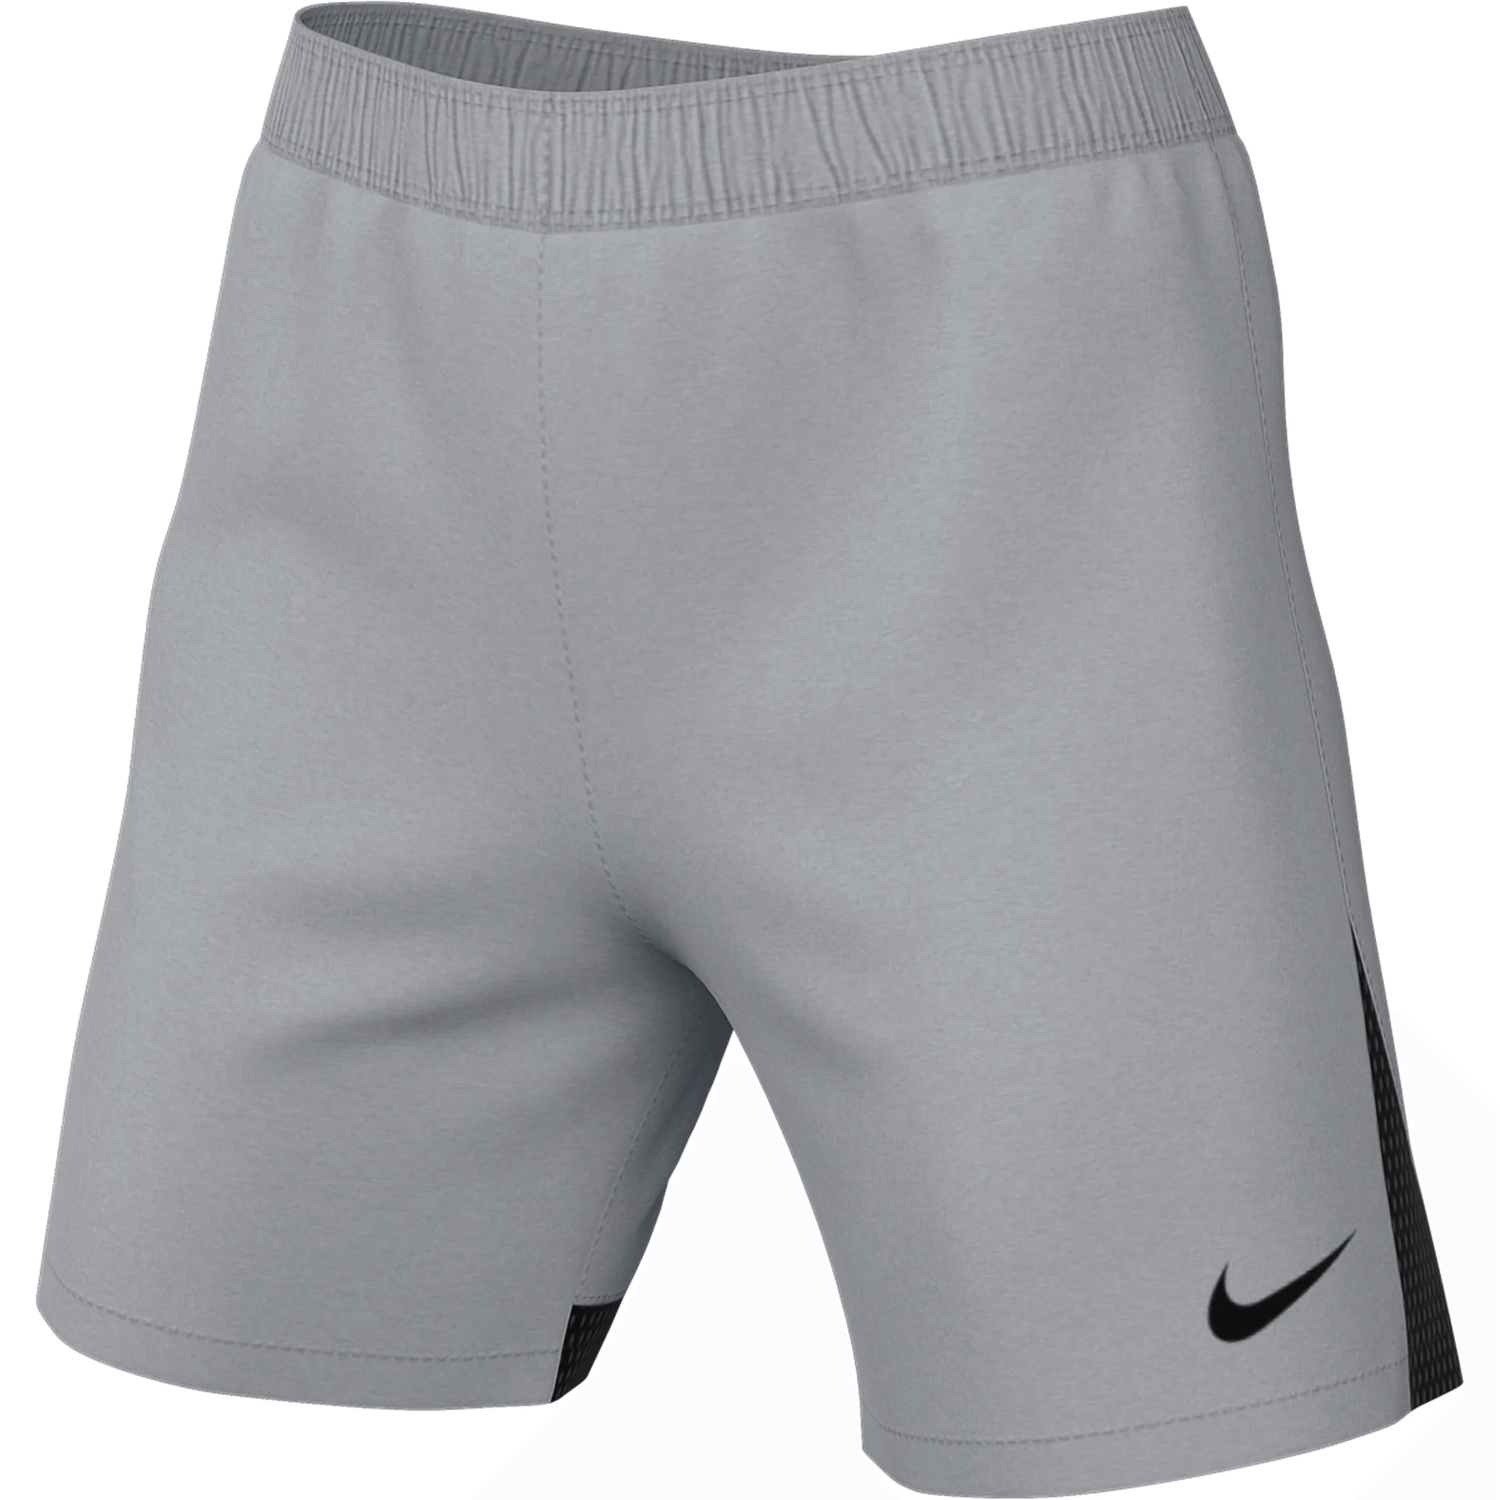 Nike Women's DF Classic II Shorts Grey-Black (Front)